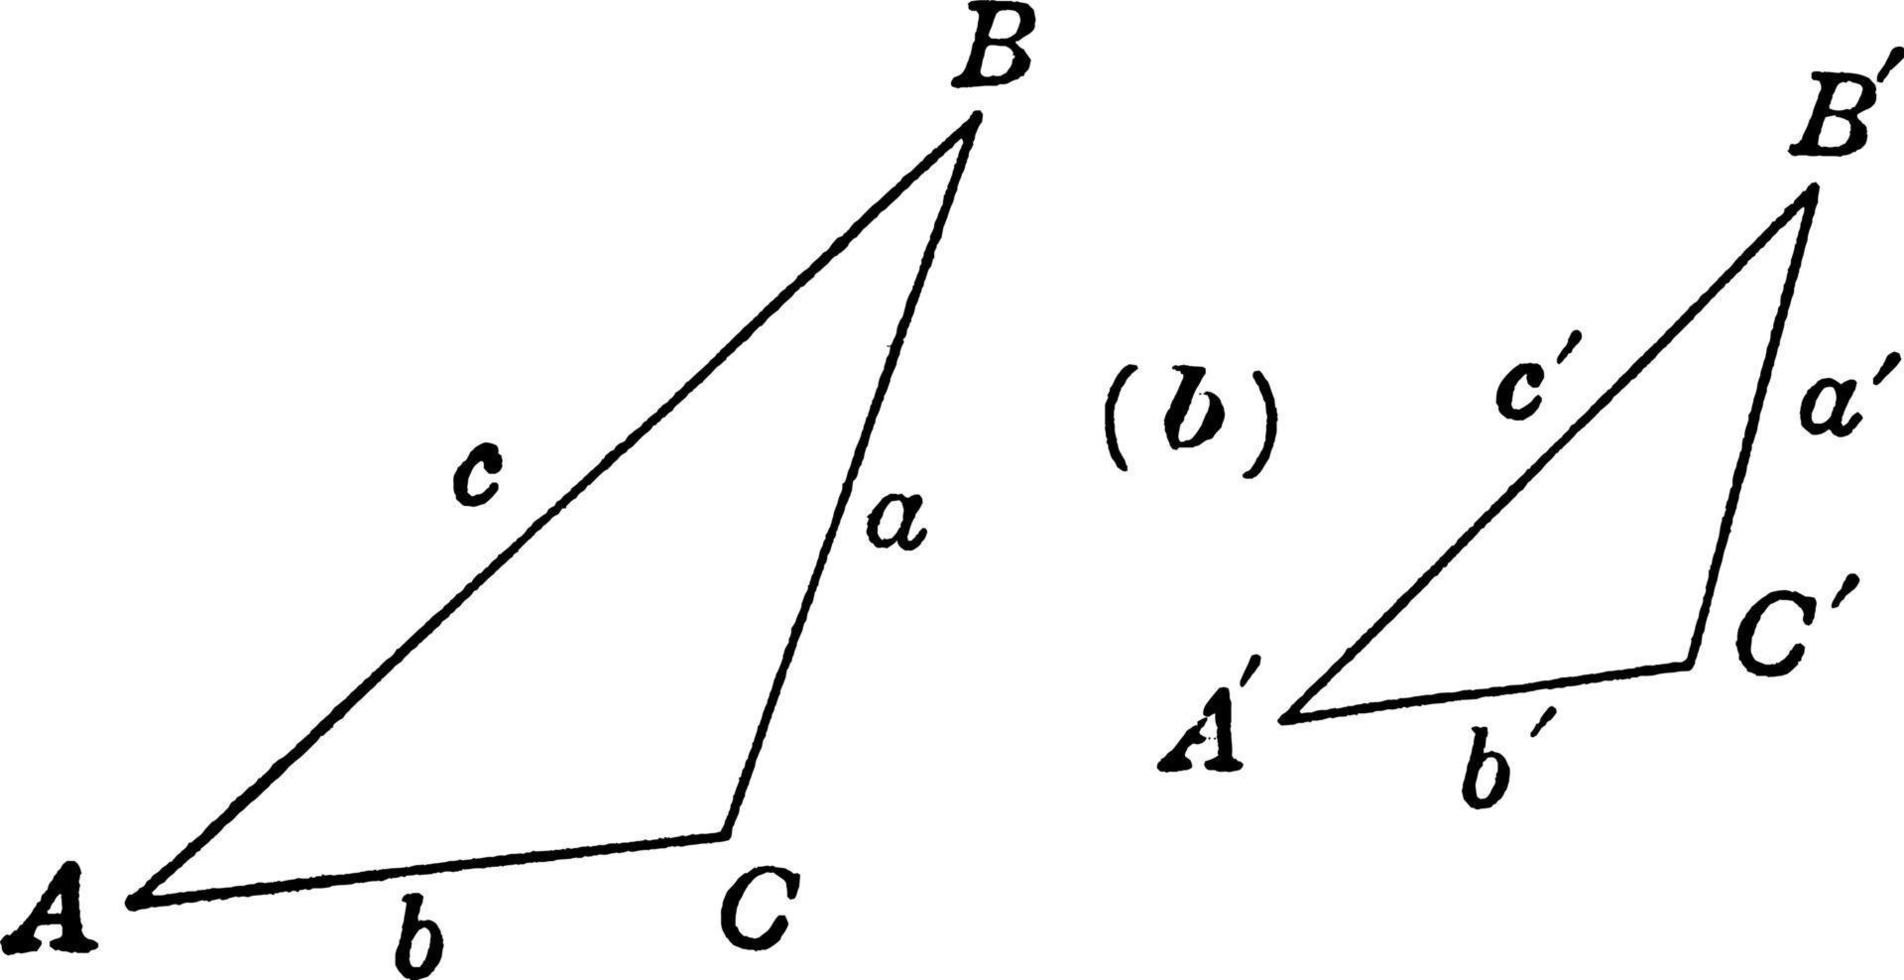 liknande trianglar, årgång illustration. vektor